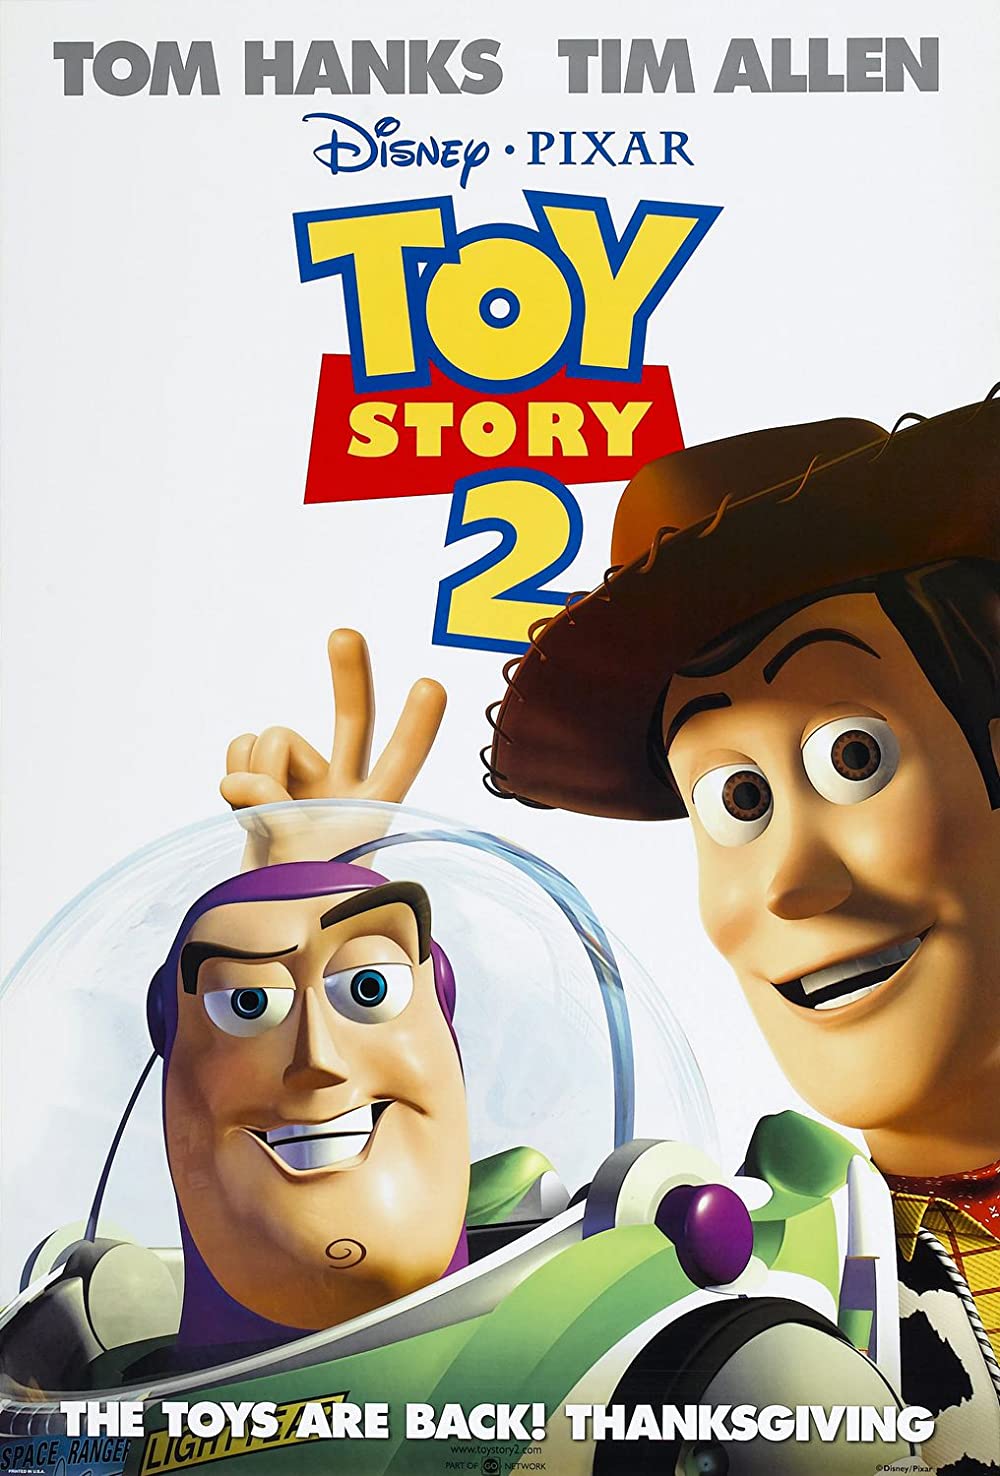 Filmbeschreibung zu Toy Story 2